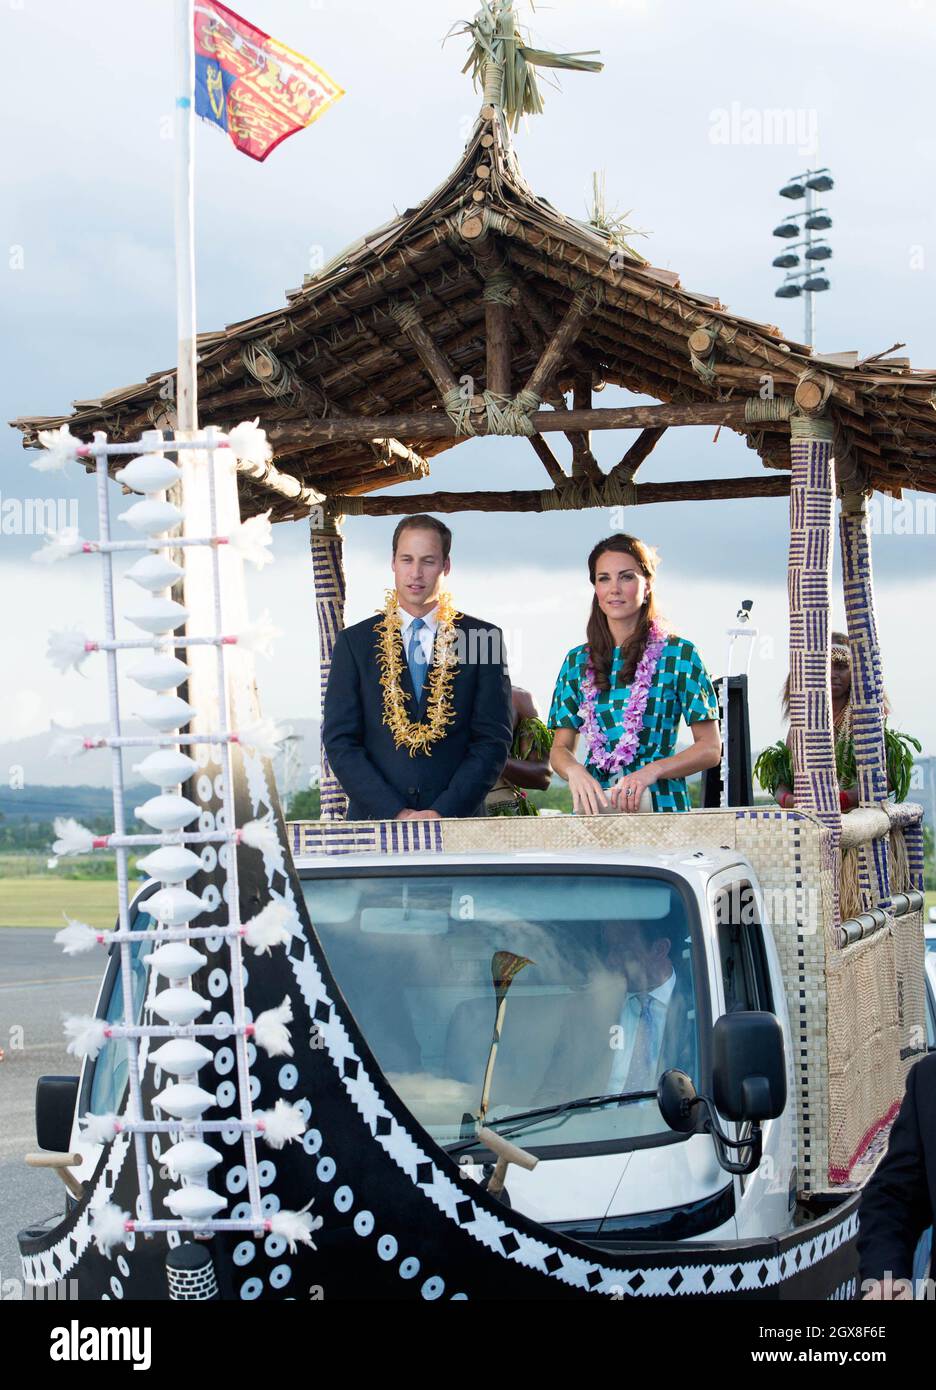 Catherine, Duchessa di Cambridge e il Principe William, Duca di Cambridge, indossando le tradizionali ghirlande, viaggiano in un veicolo scoperto a forma di canoa dopo il loro arrivo all'Aeroporto Henderson di Honiara, Isole Salomone, il 16 settembre 2012. Foto Stock